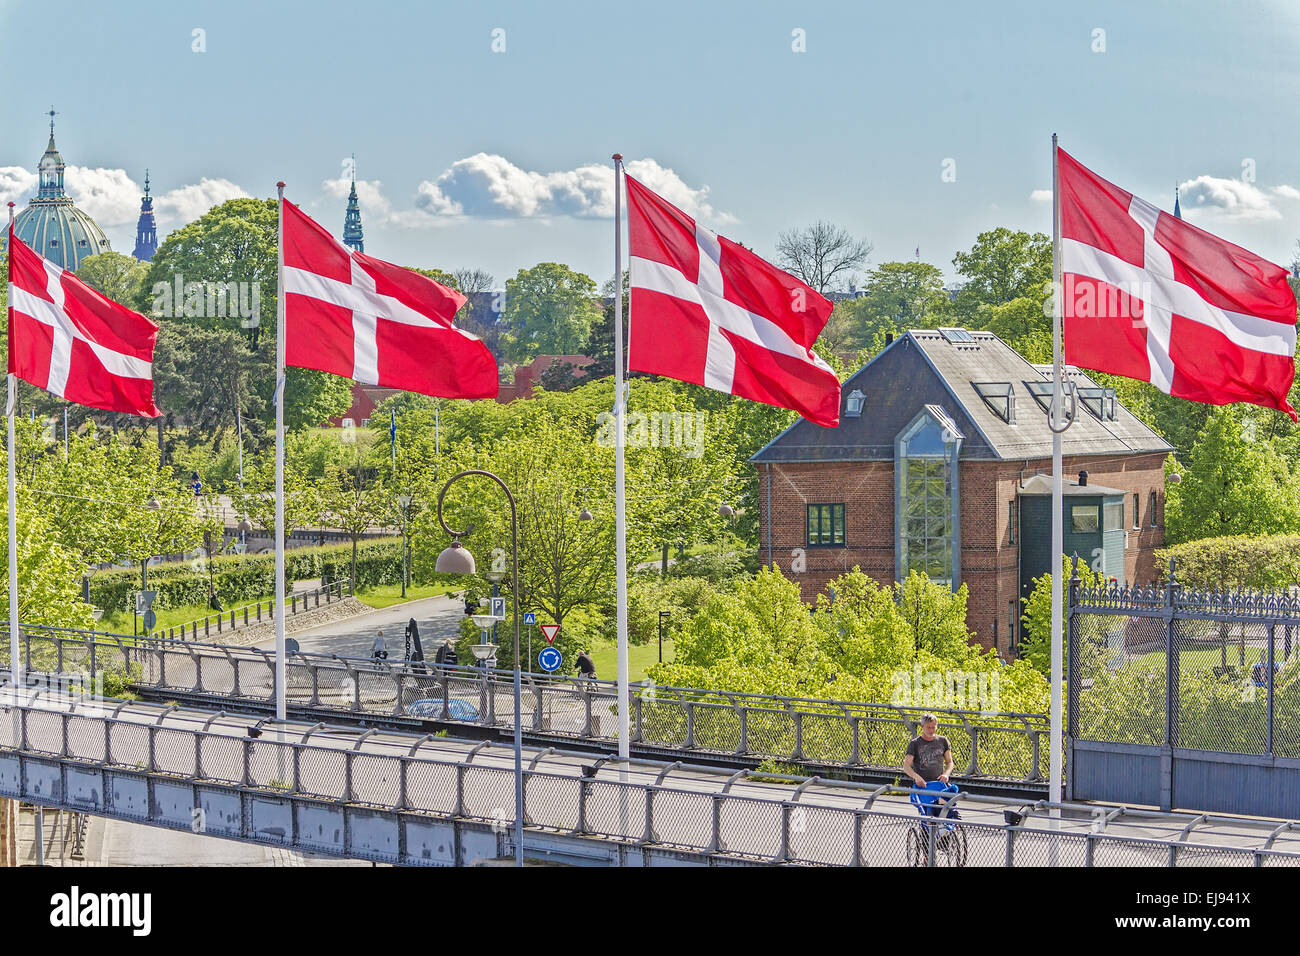 Banderas danesa Copenhague Dinamarca Foto de stock